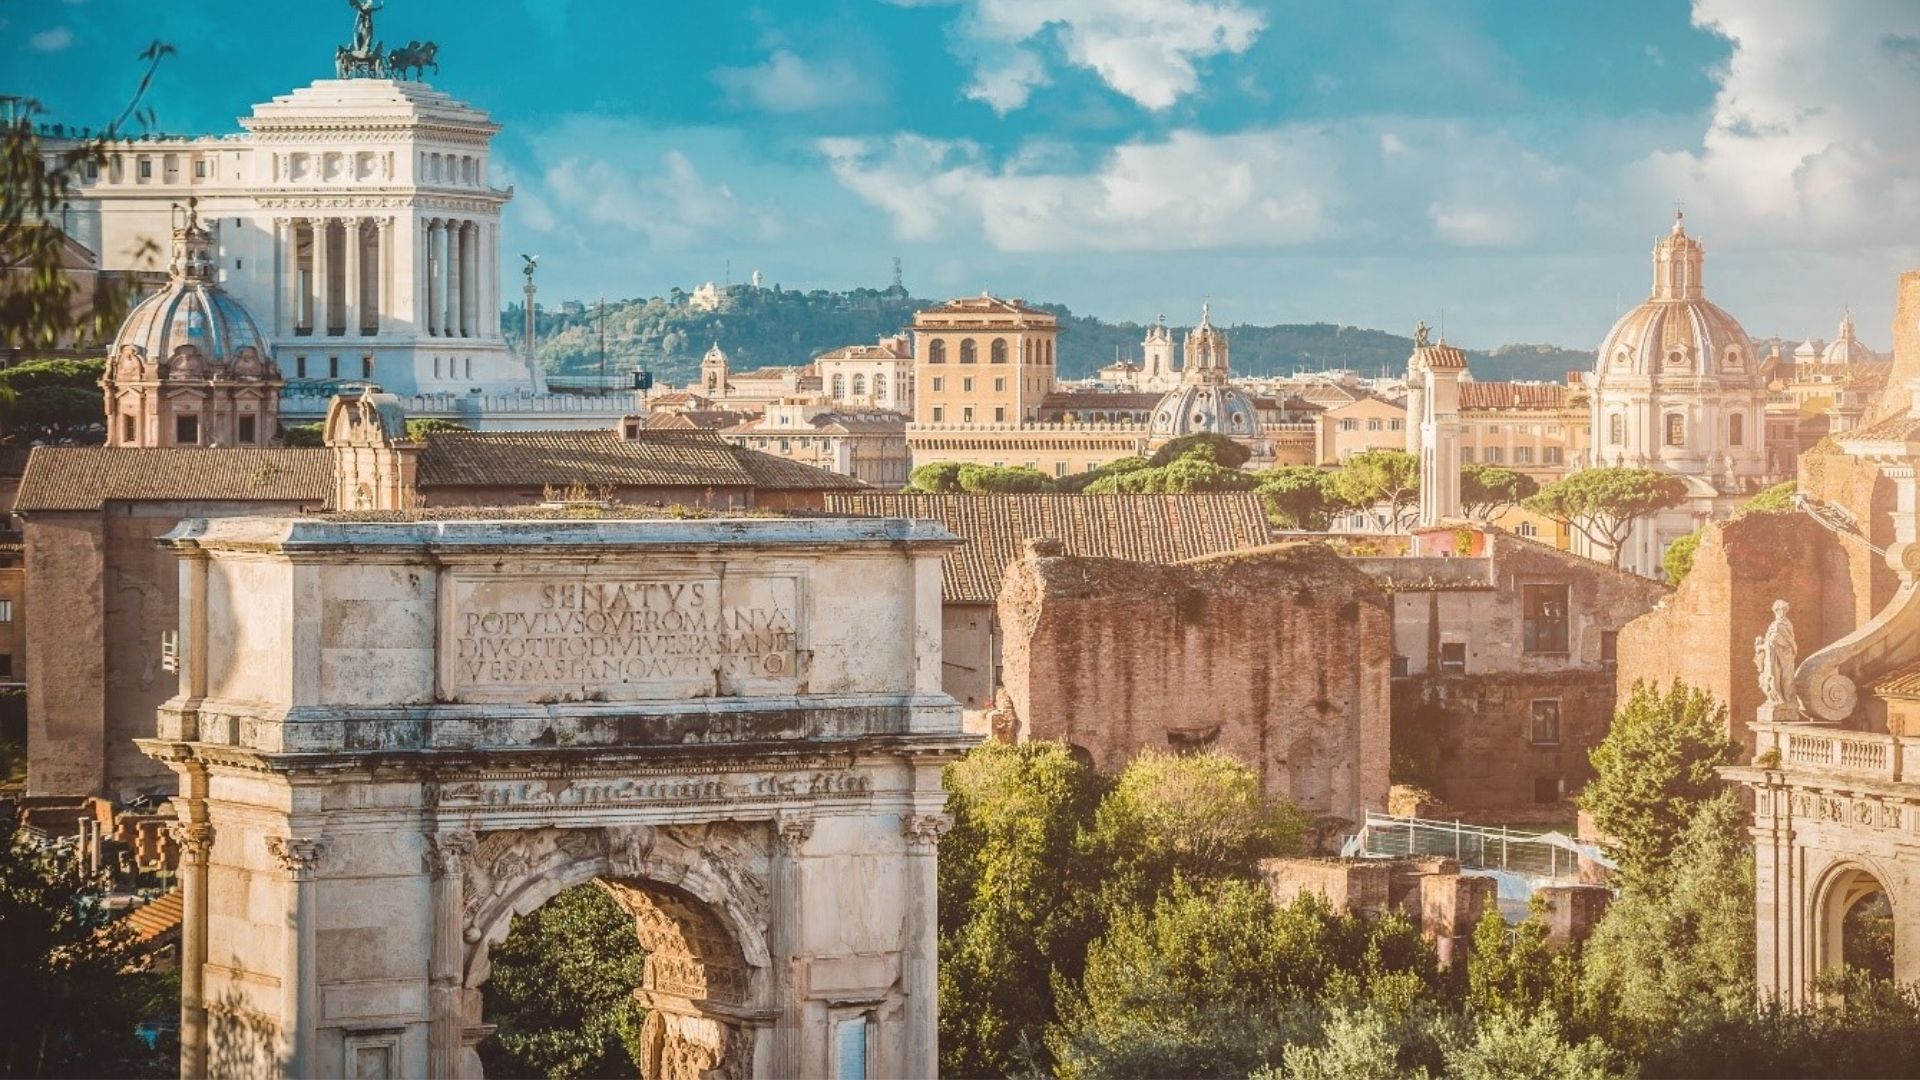 Colosseum & Ancient City VIP | Rome Tour